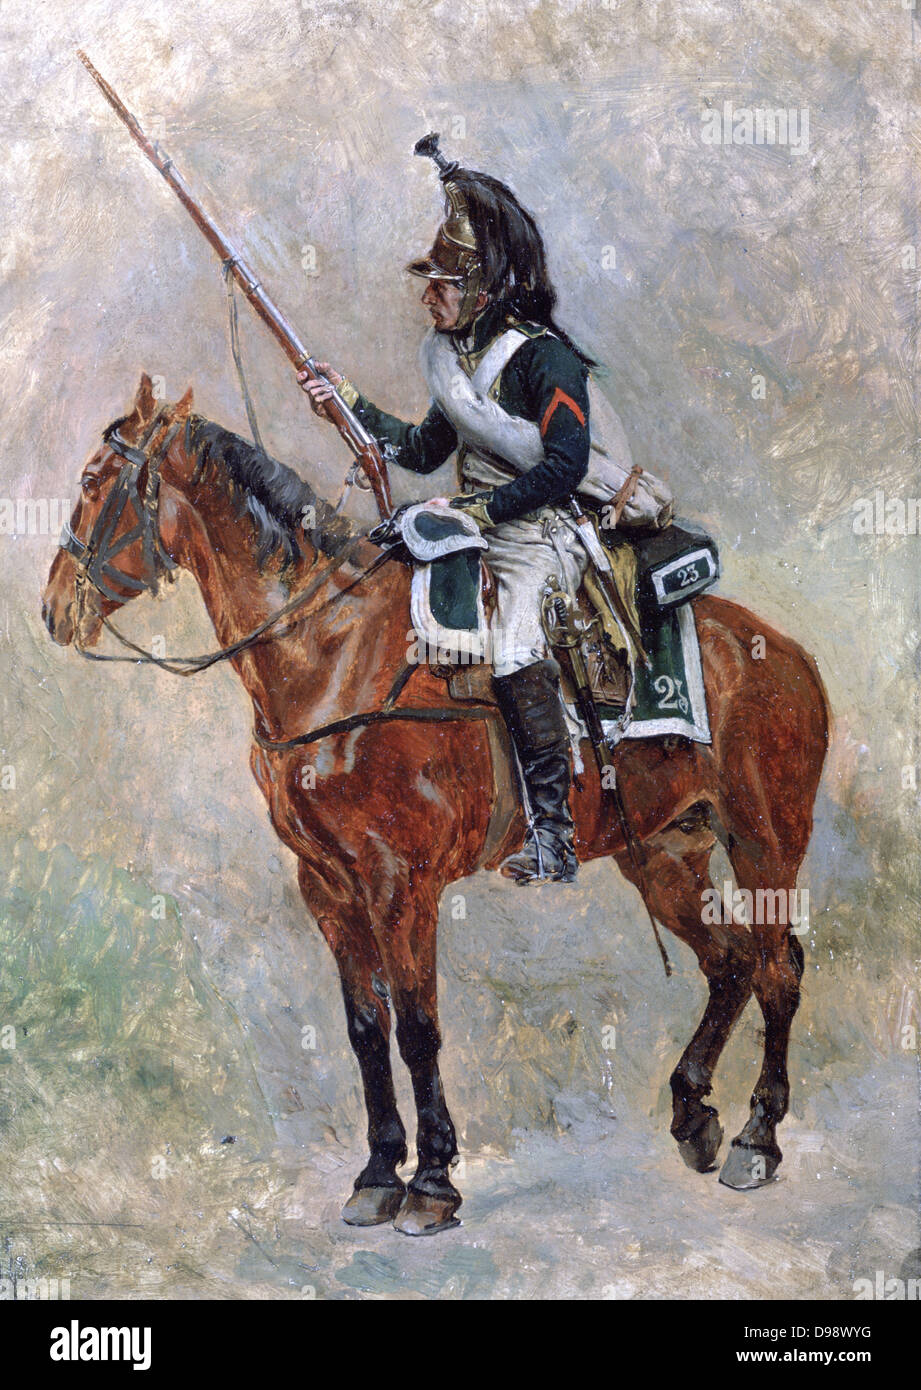 Canada Dragoon. Jean Loouis Ernest Meissonier (1815-1891) peintre académique français. Soldat français équipement Uniforme arme épée cheval Casque Bay Banque D'Images